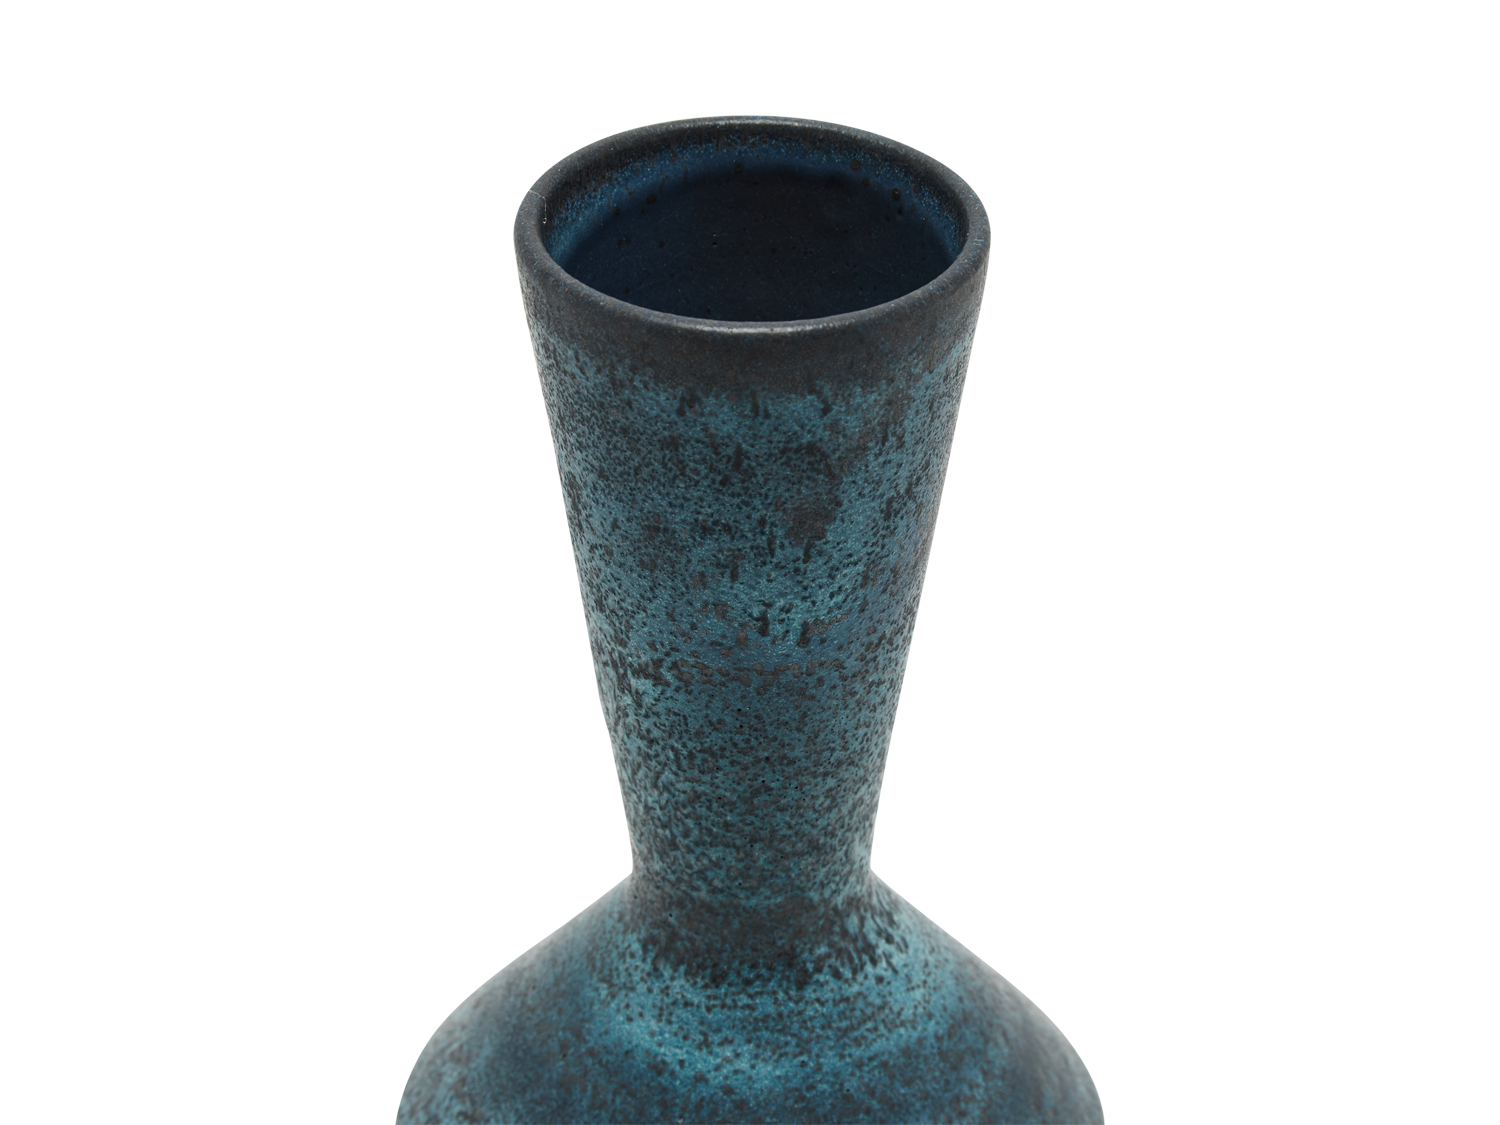 Coned Necked Vase